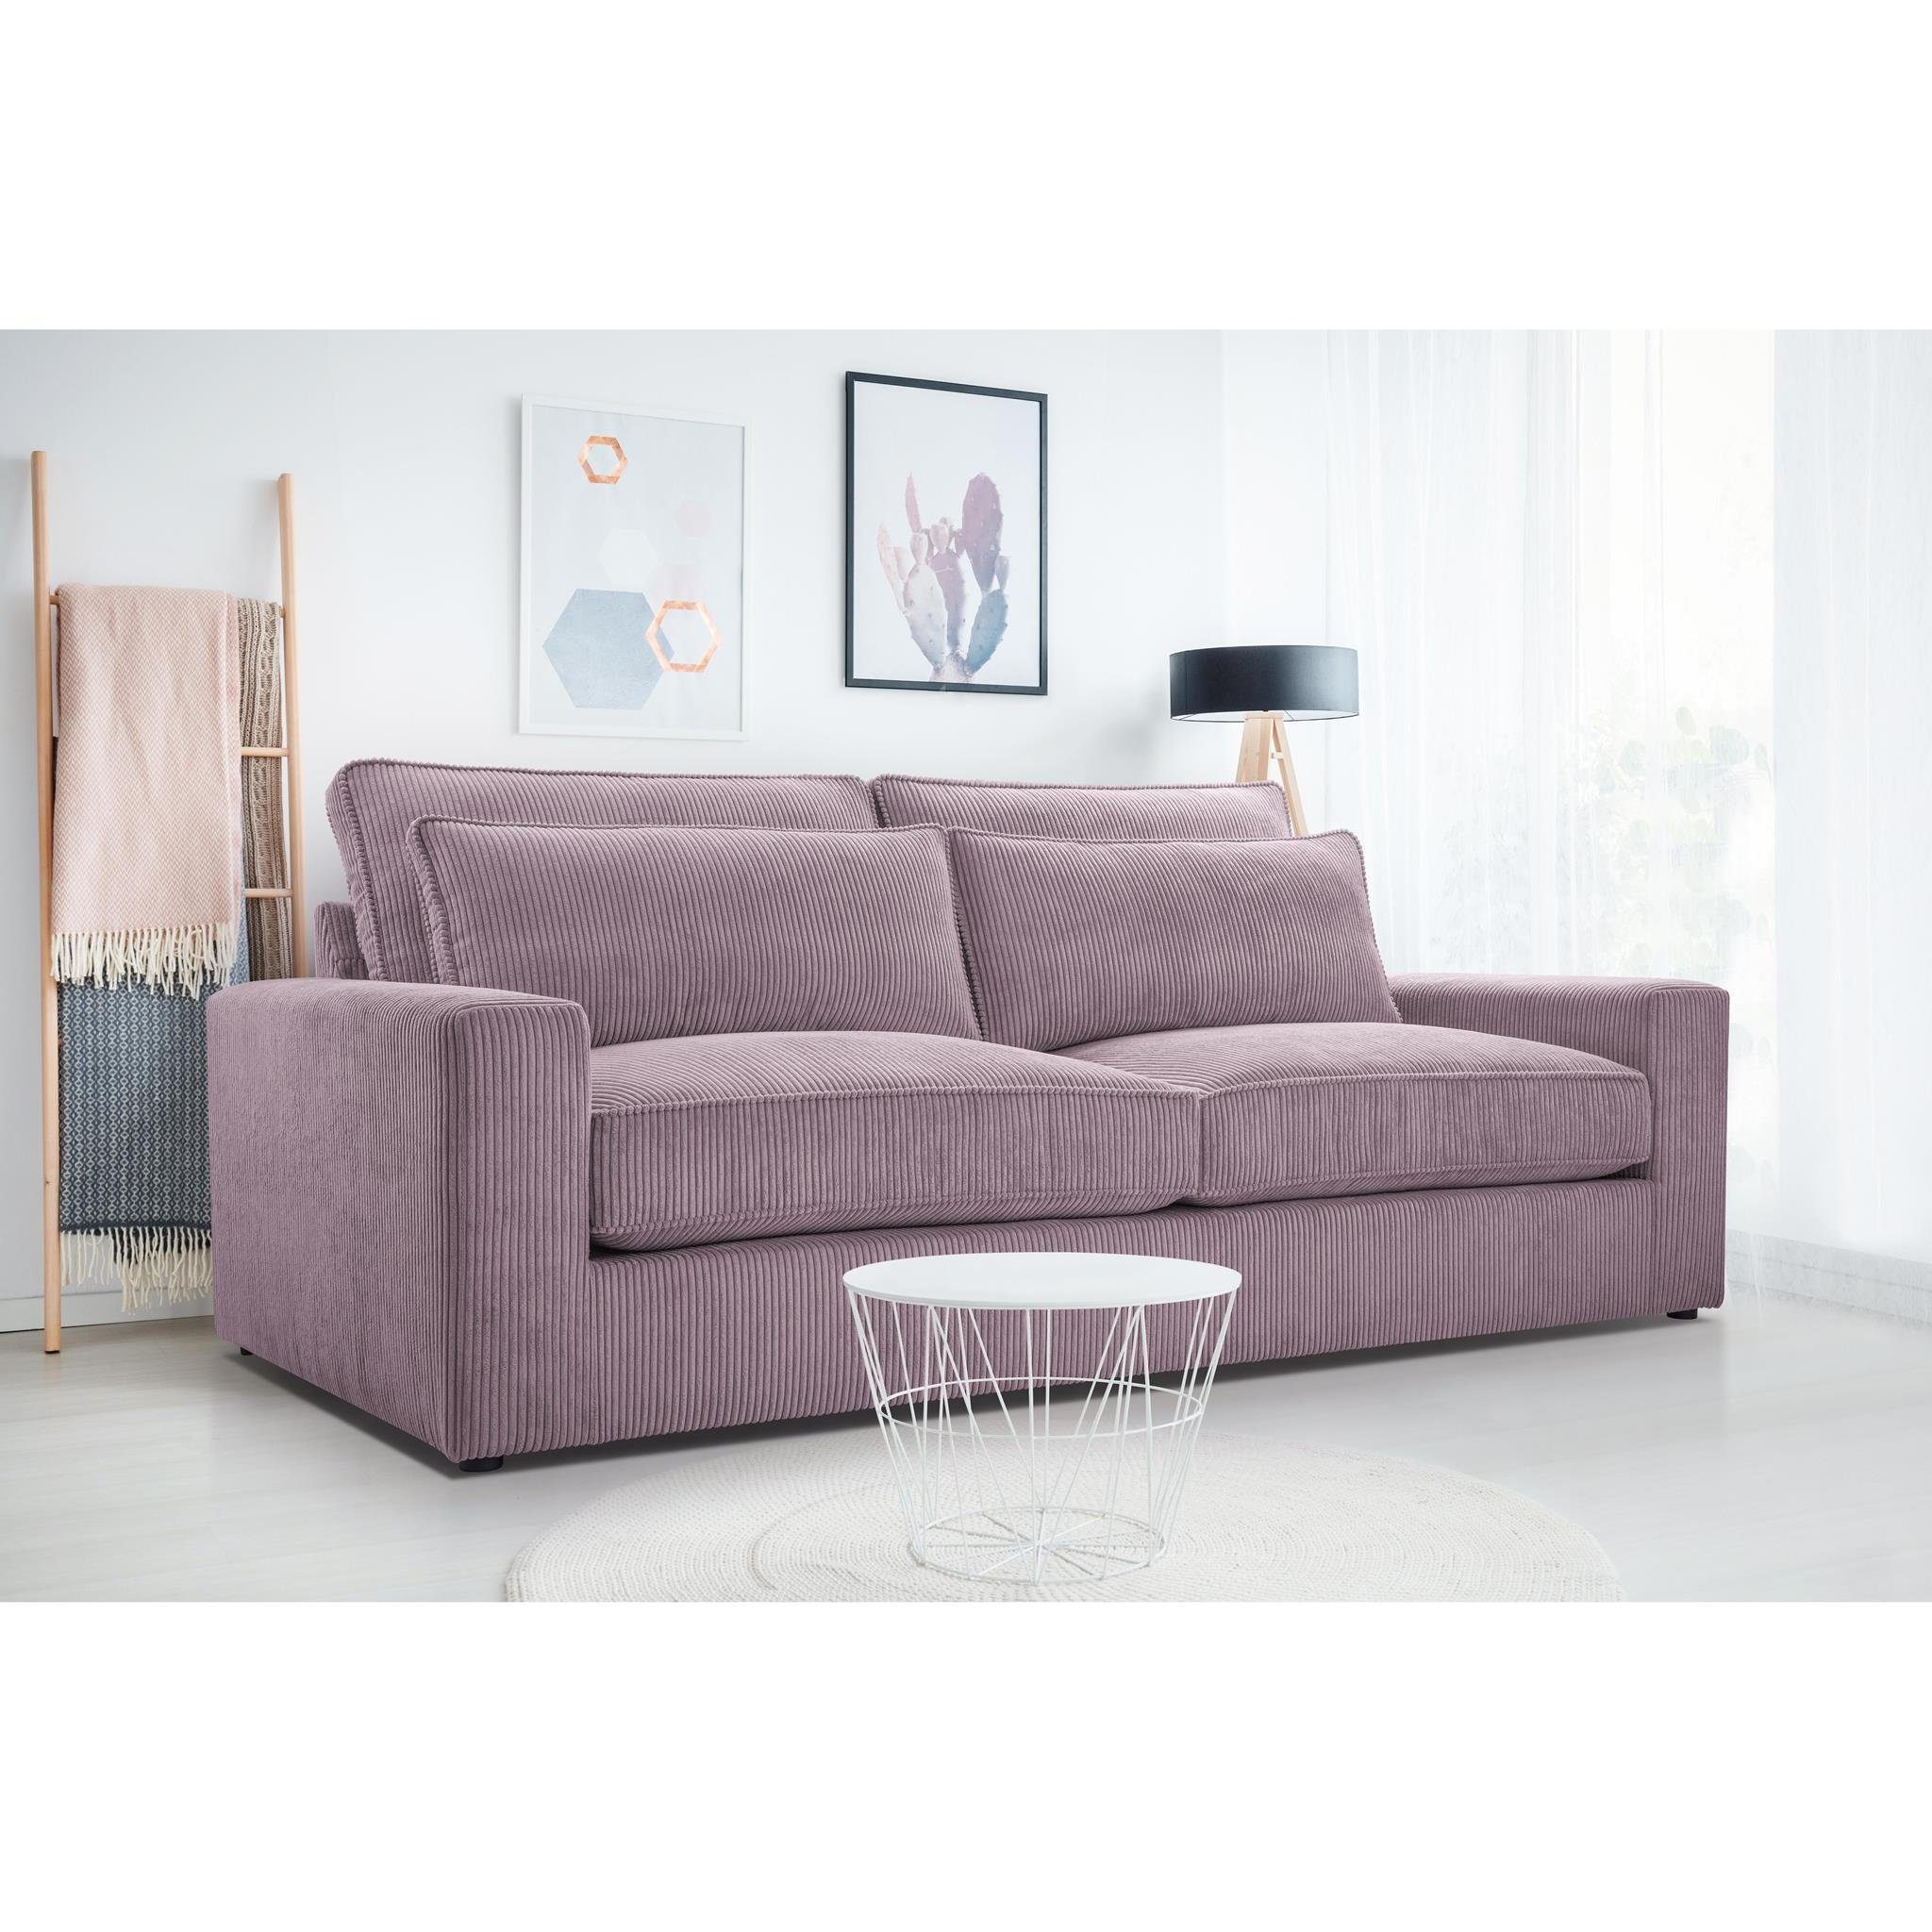 Beautysofa 3-Sitzer Como, Wellenfedern, Wohnzimmer, 221 cm Sofa im modernes Stil, Polstersofa aus Velours im Cord-Struktur Rosa (lincoln 61)